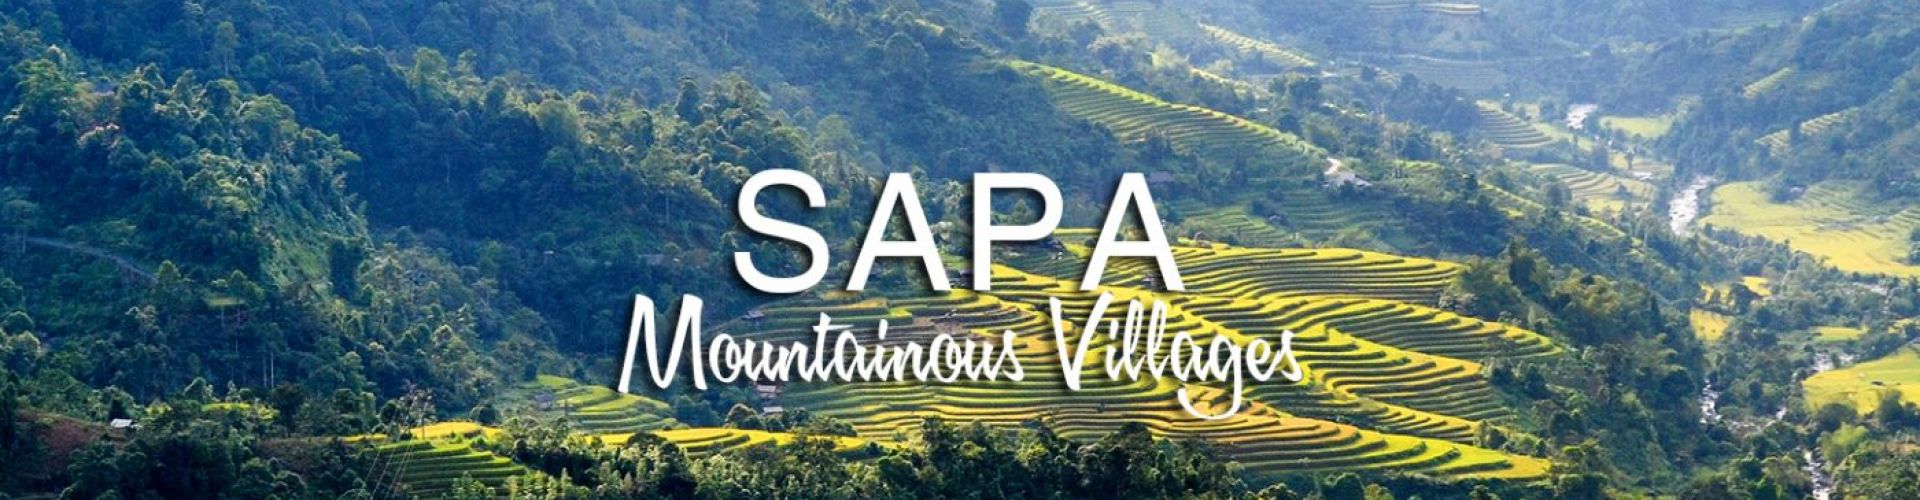 Destinations in Sapa